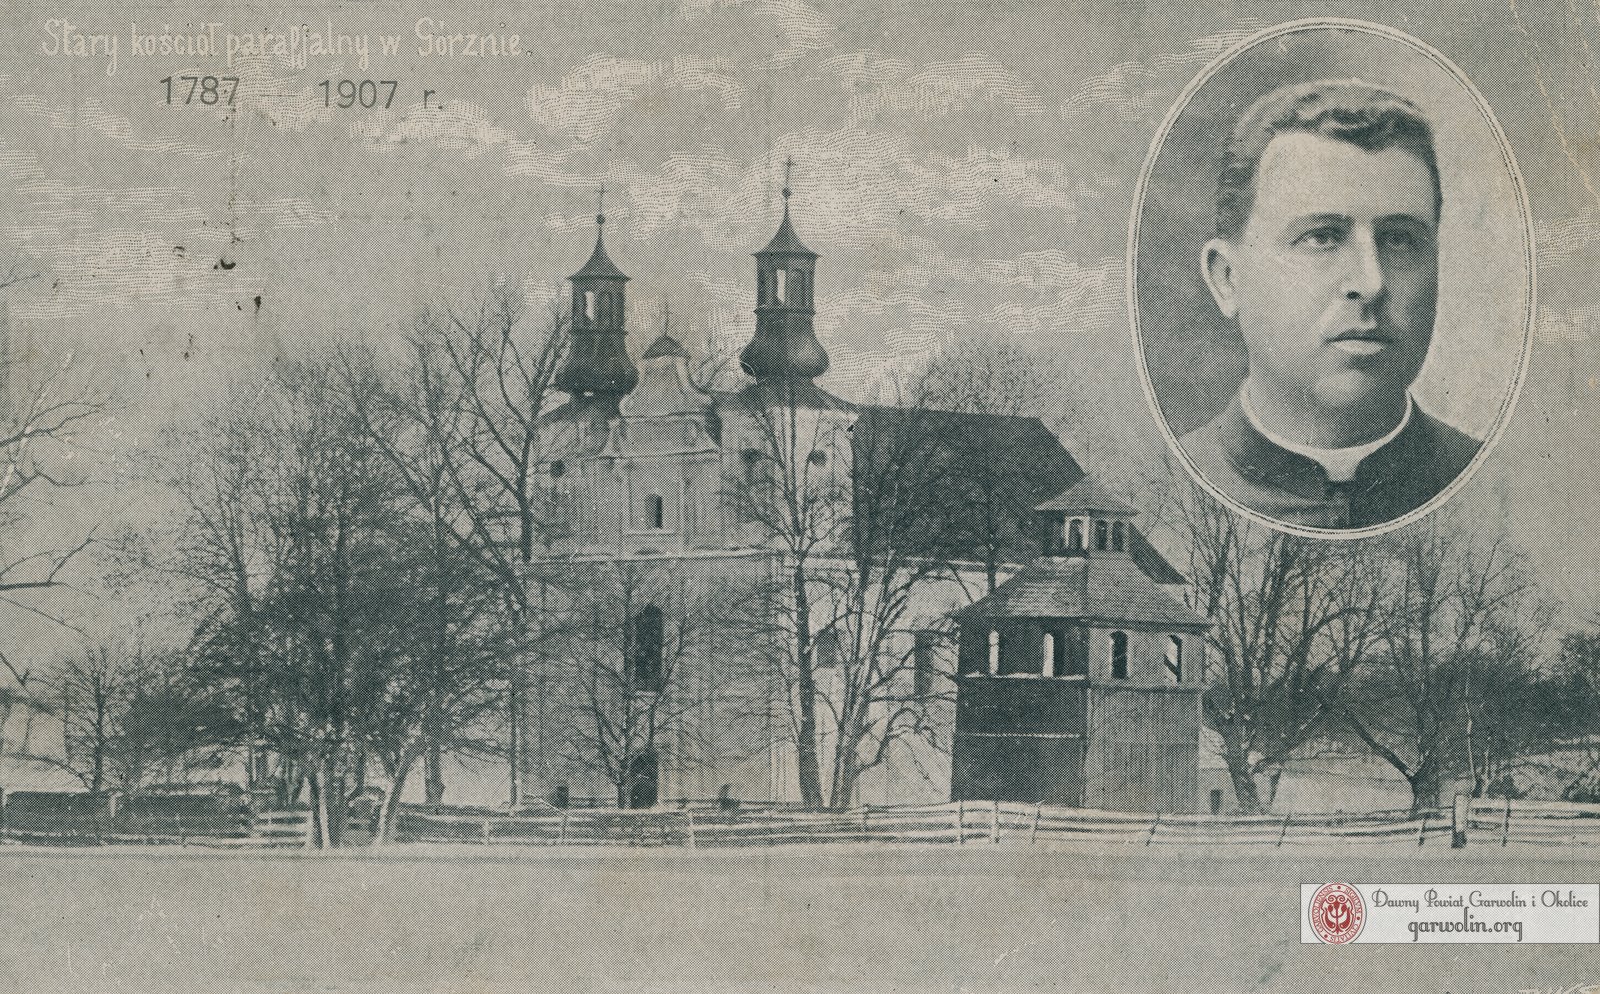 Kościół w Górznie - stan z 1907 r.